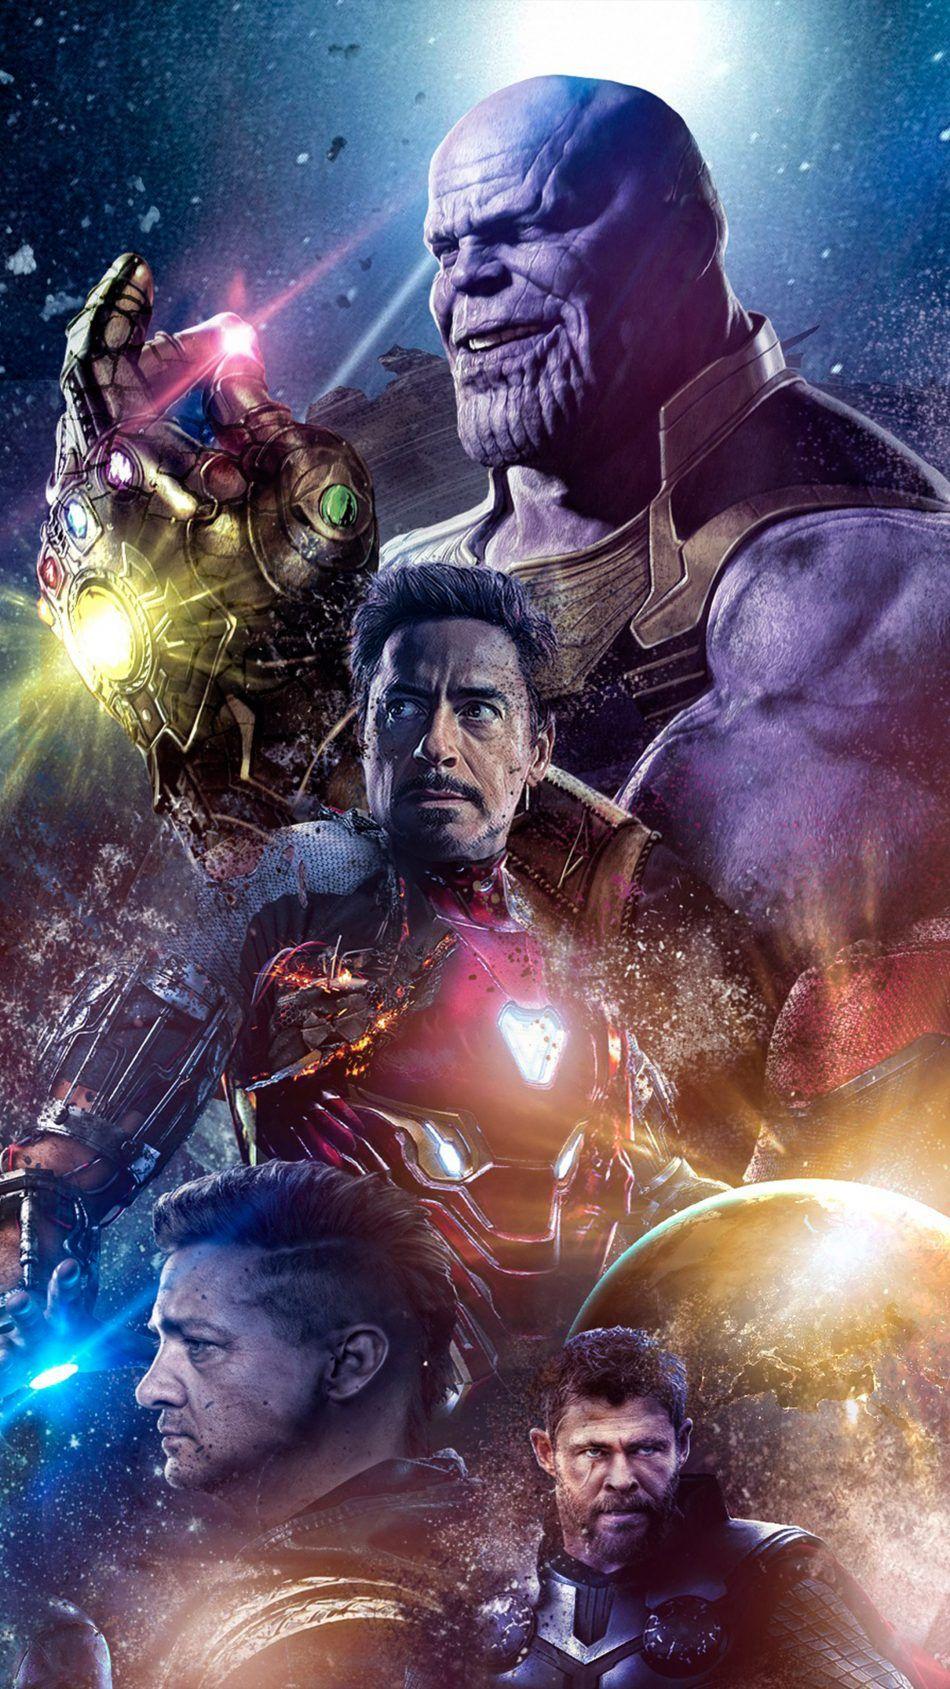 Avengers Endgame 2019. Marvel wallpaper, Avengers wallpaper, Marvel